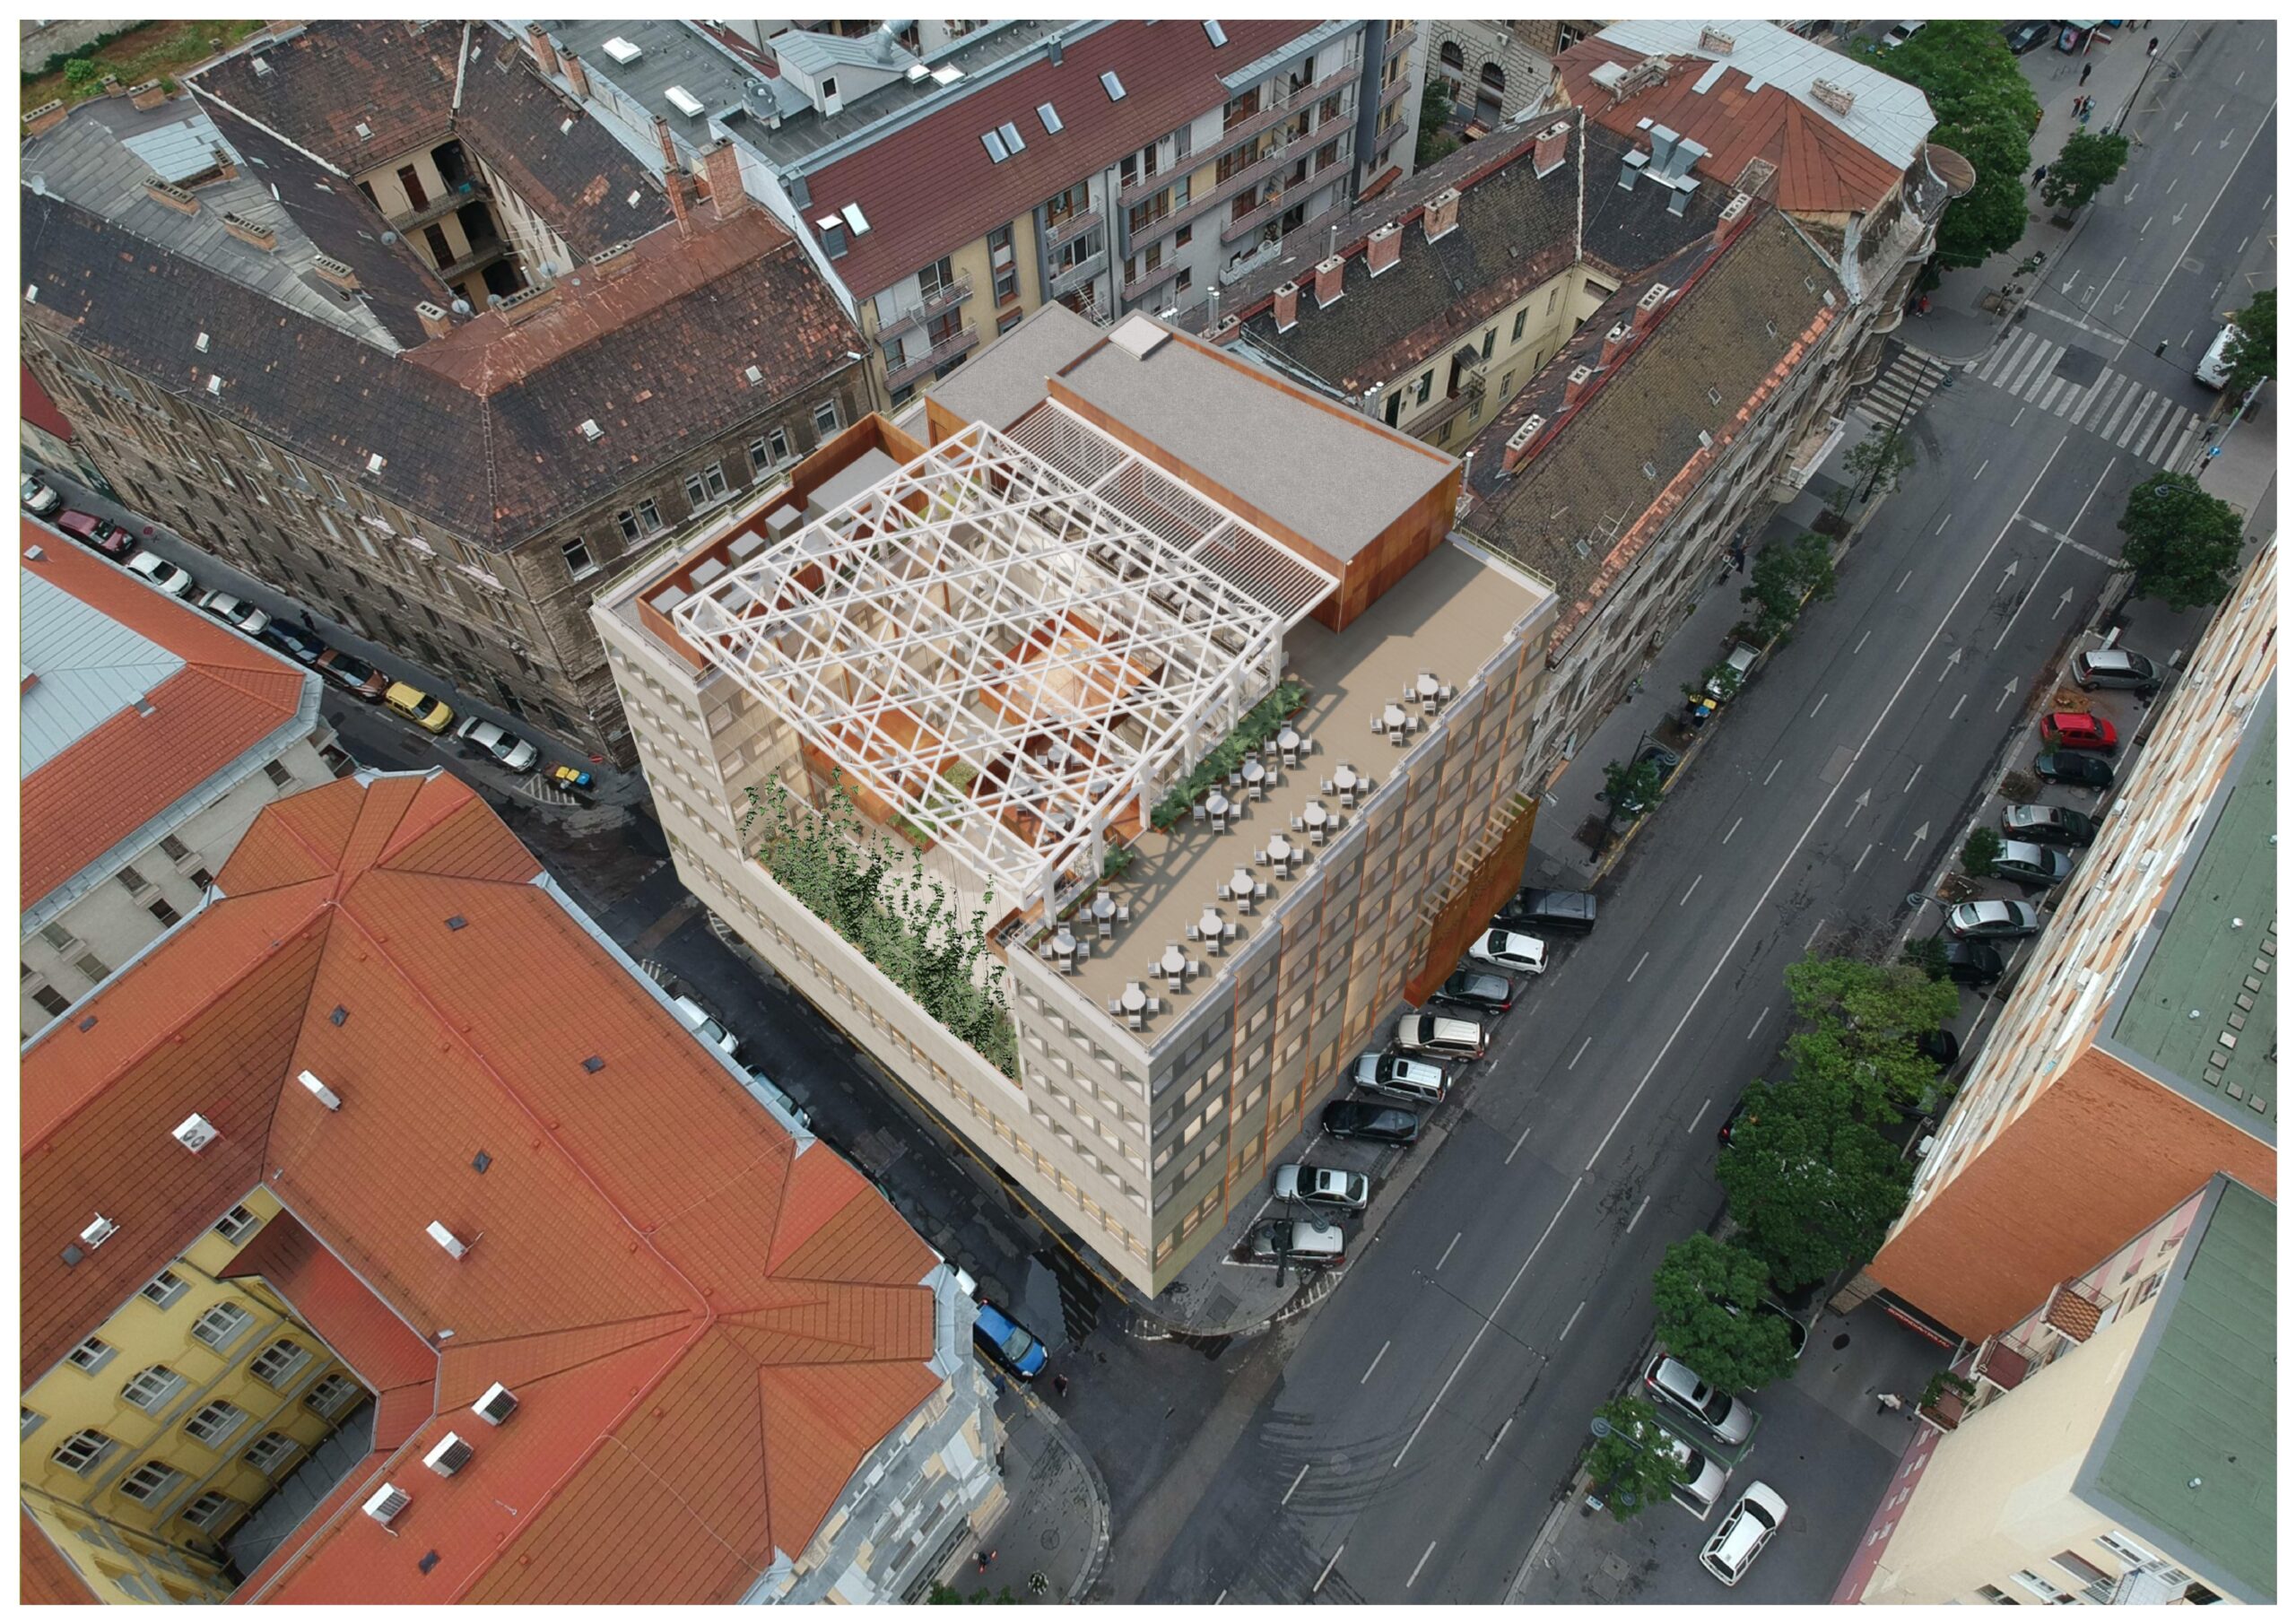 Megkezdődik a Firgun Ház – Színház és Kulturális Központ építése – Neokohn